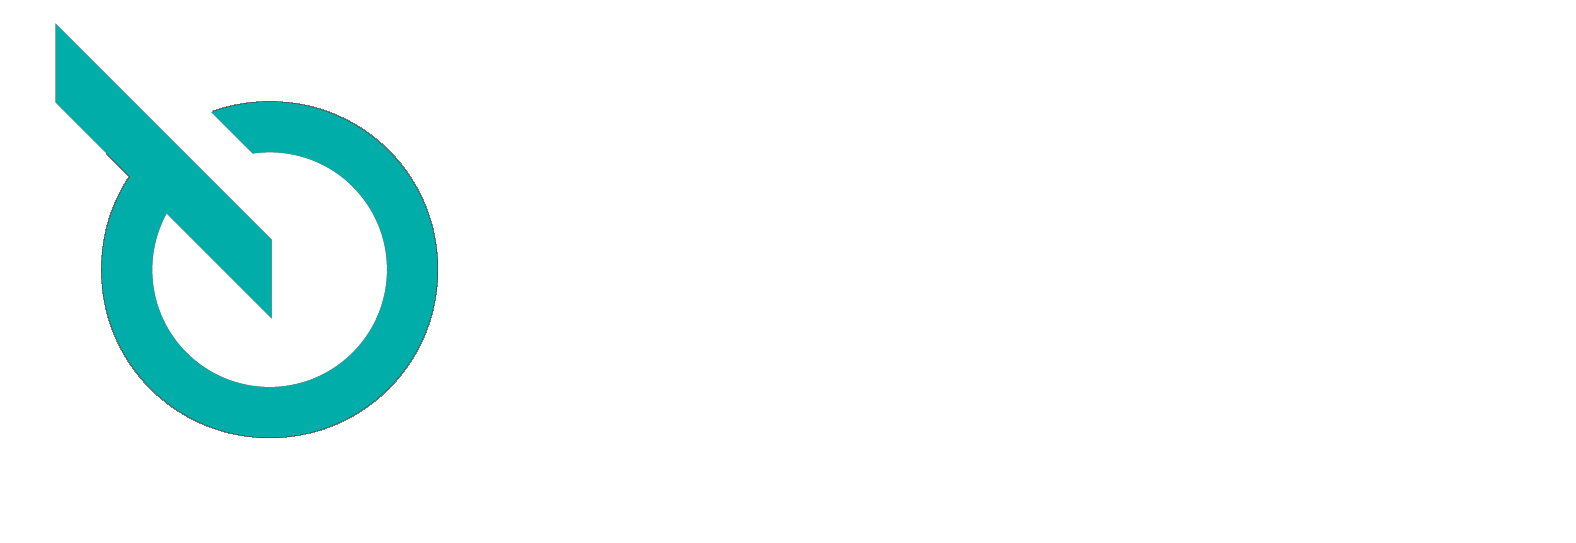 VWE Logo